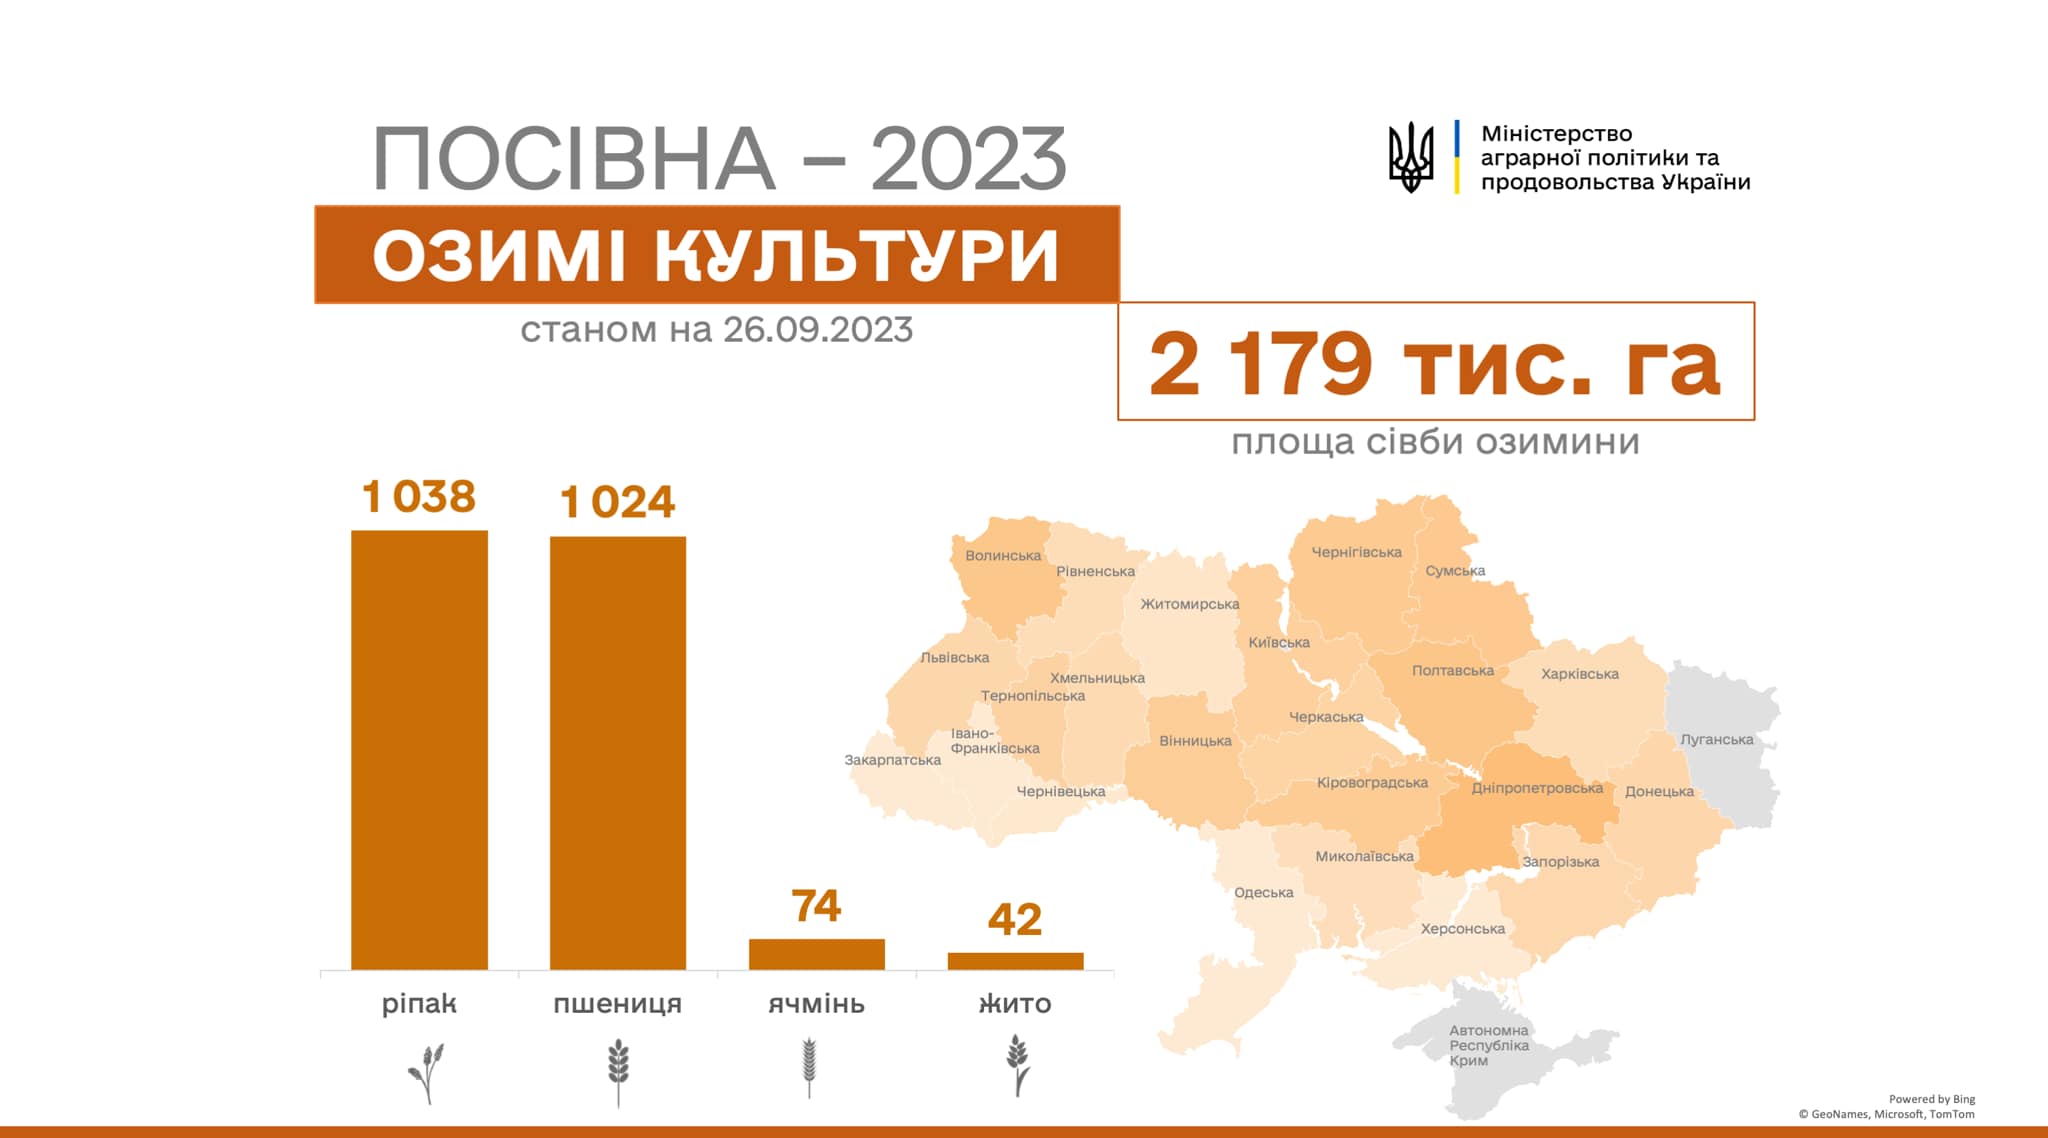 В Україні засіяно понад 2 млн га озимих культур 3